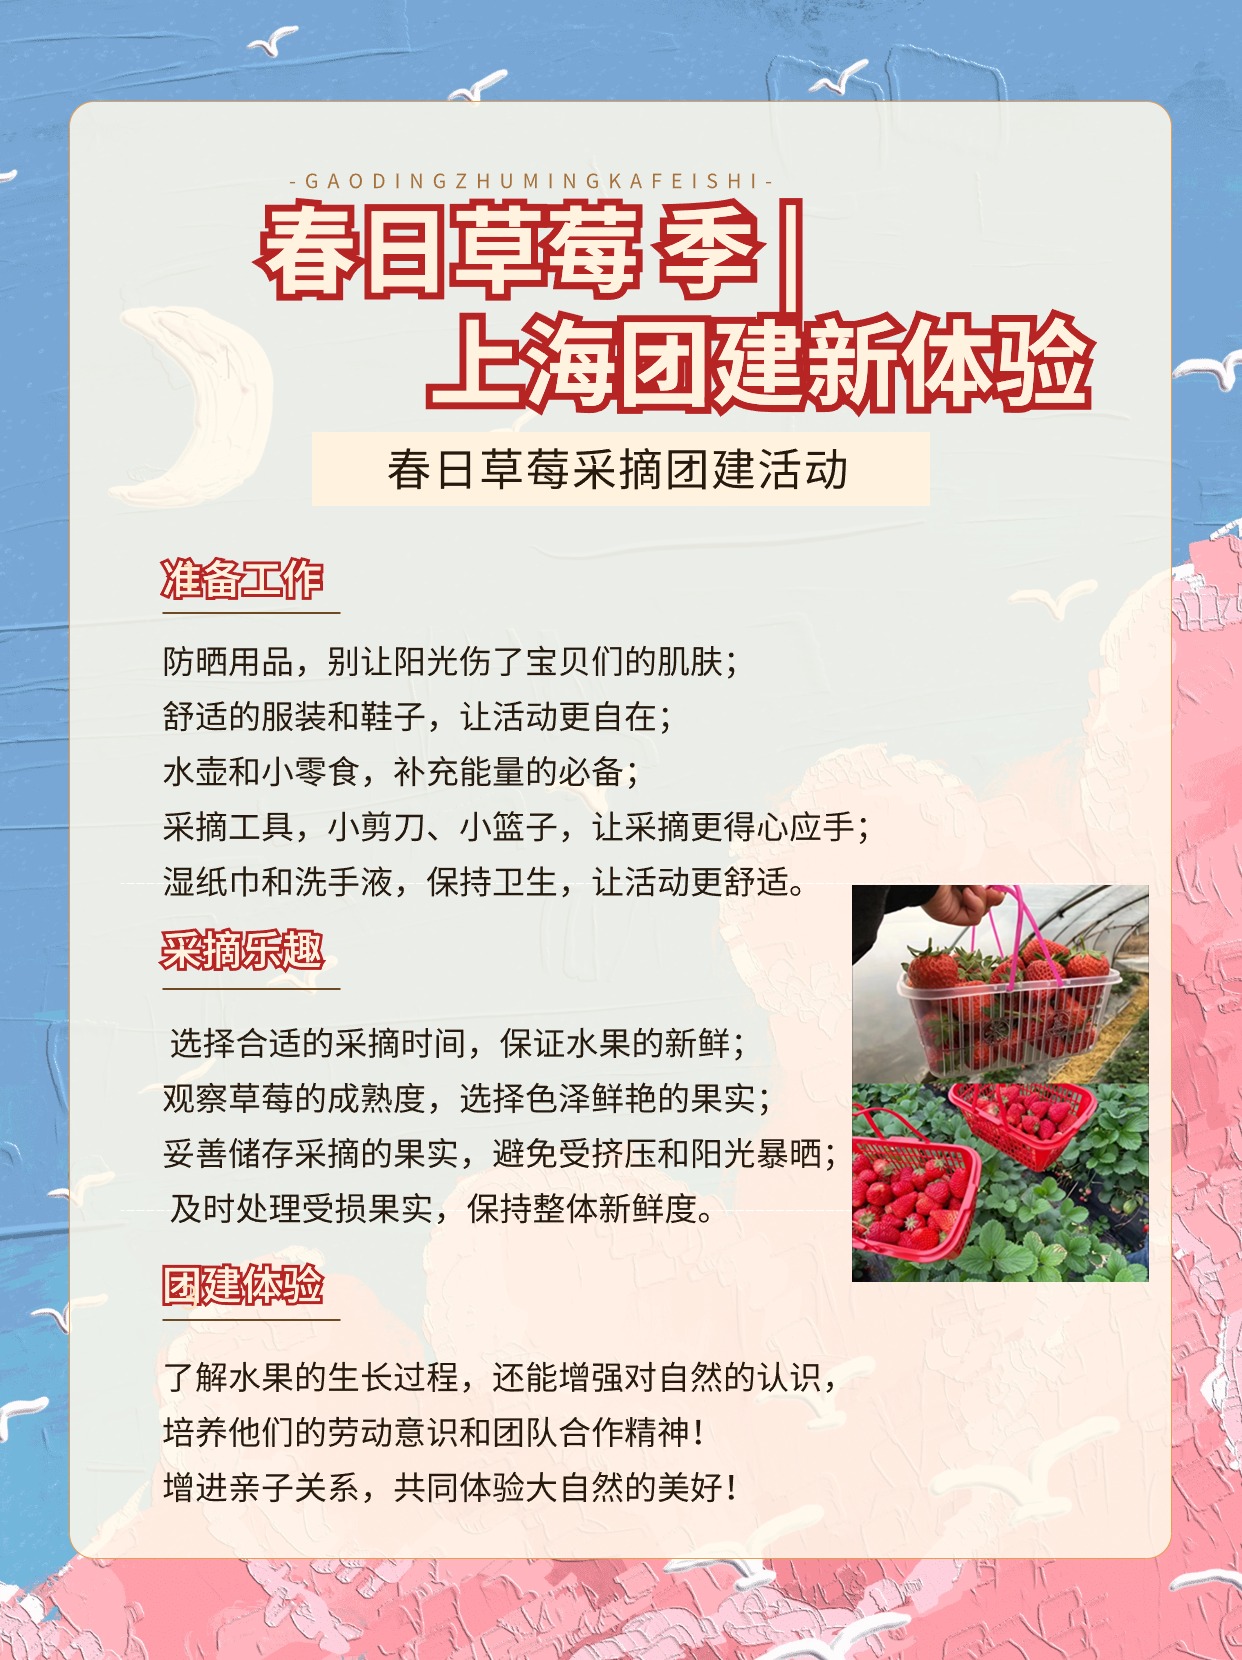 江浙沪一日游团建 草莓采摘+户外露营详细攻略